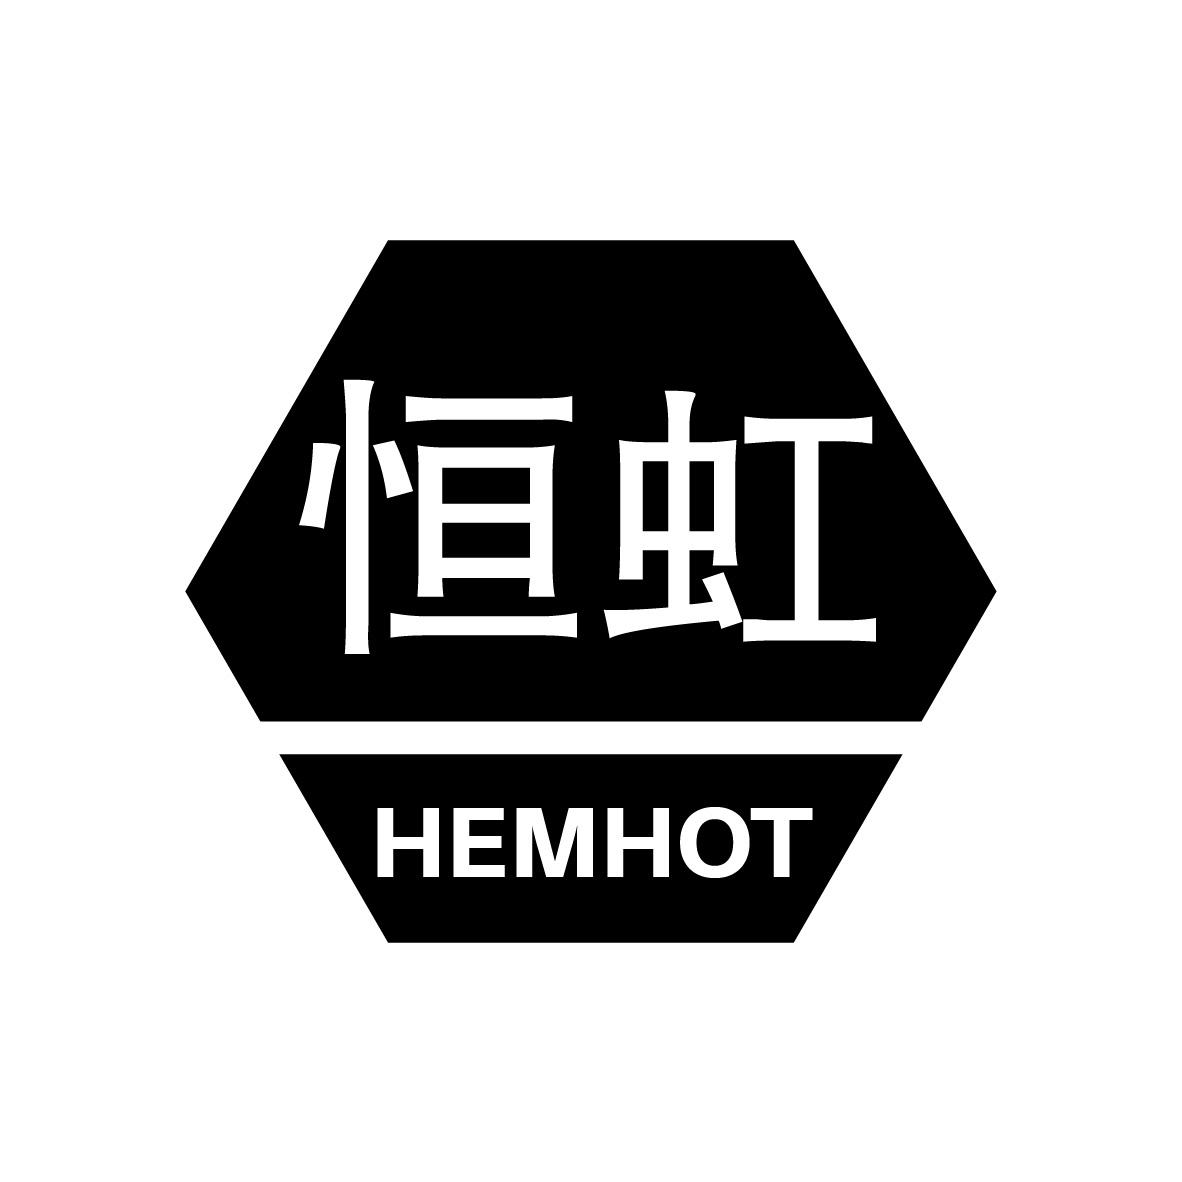  HEMHOT